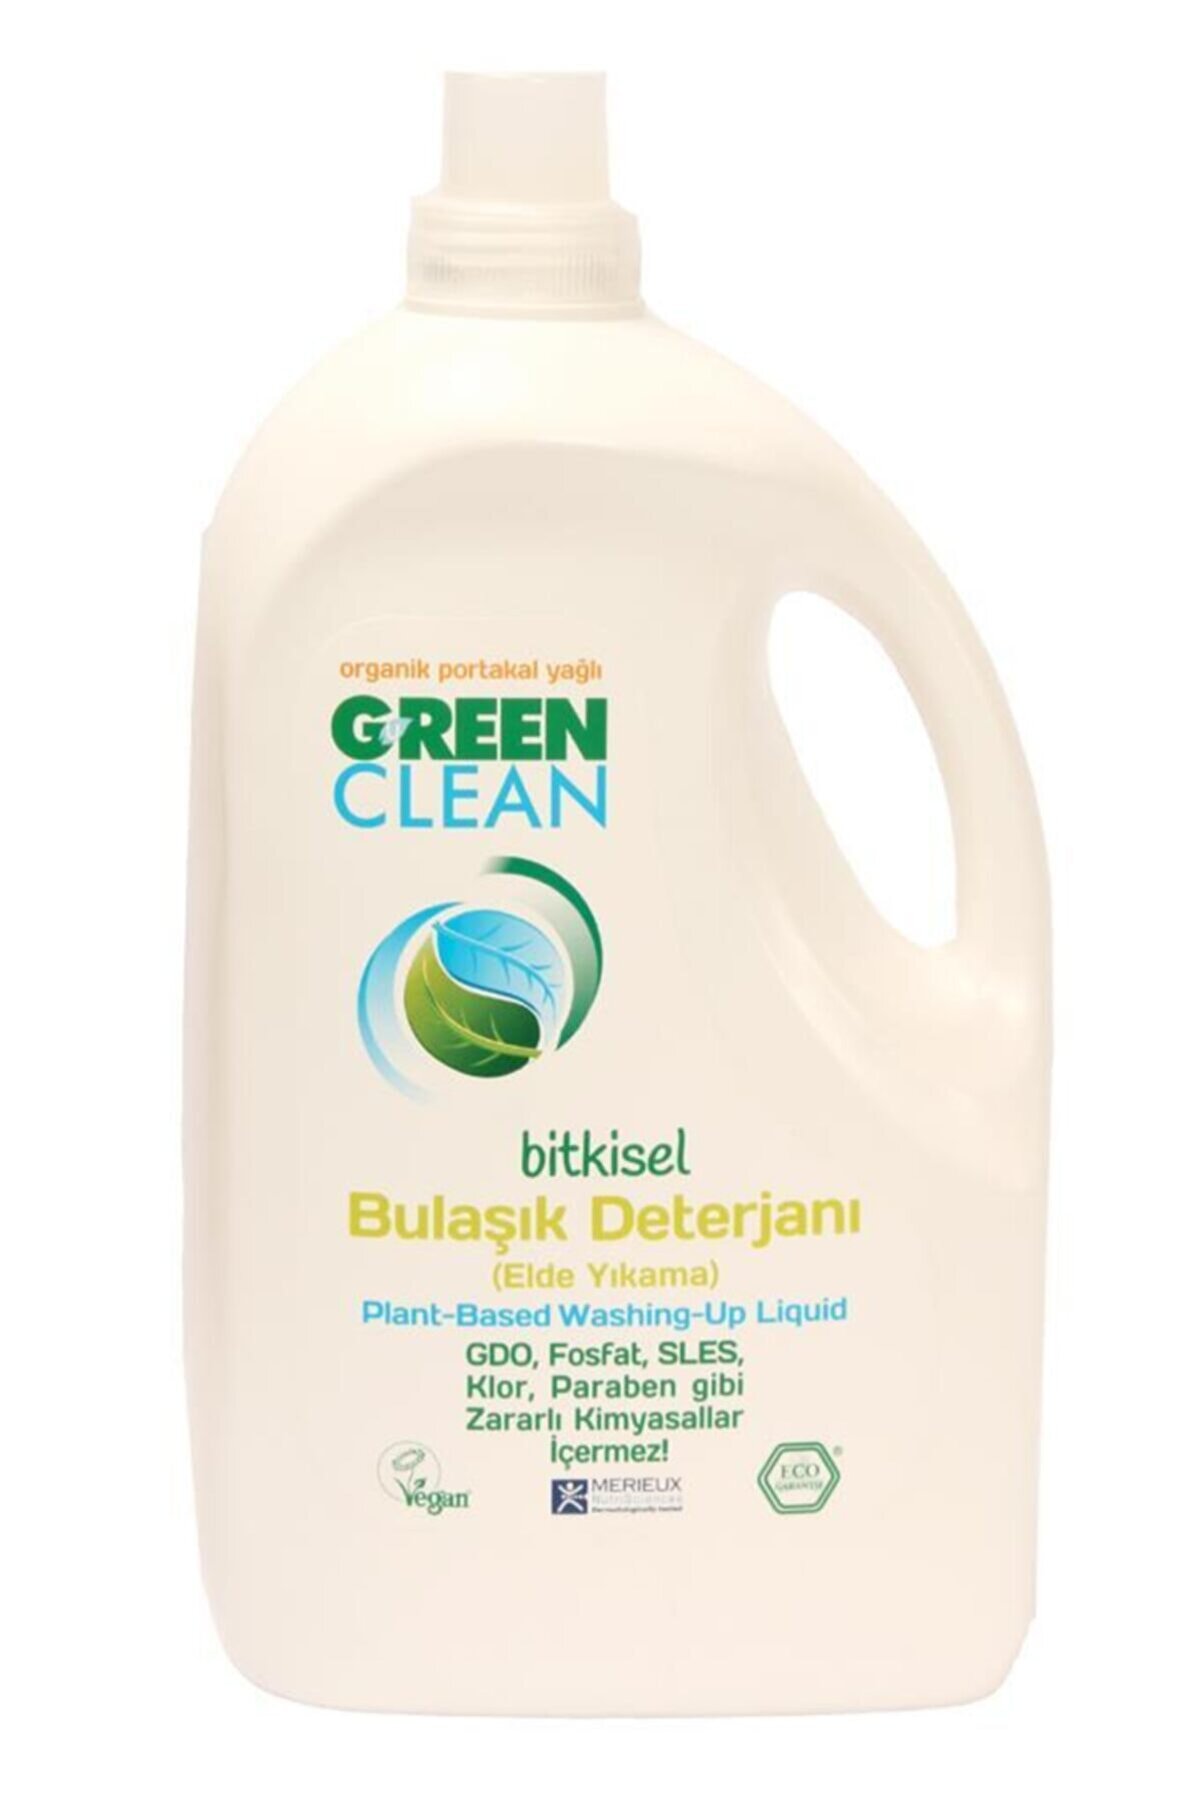 Green Clean Organik Portakal Yağlı Bitkisel Bulaşık Deterjanı 2750 ml